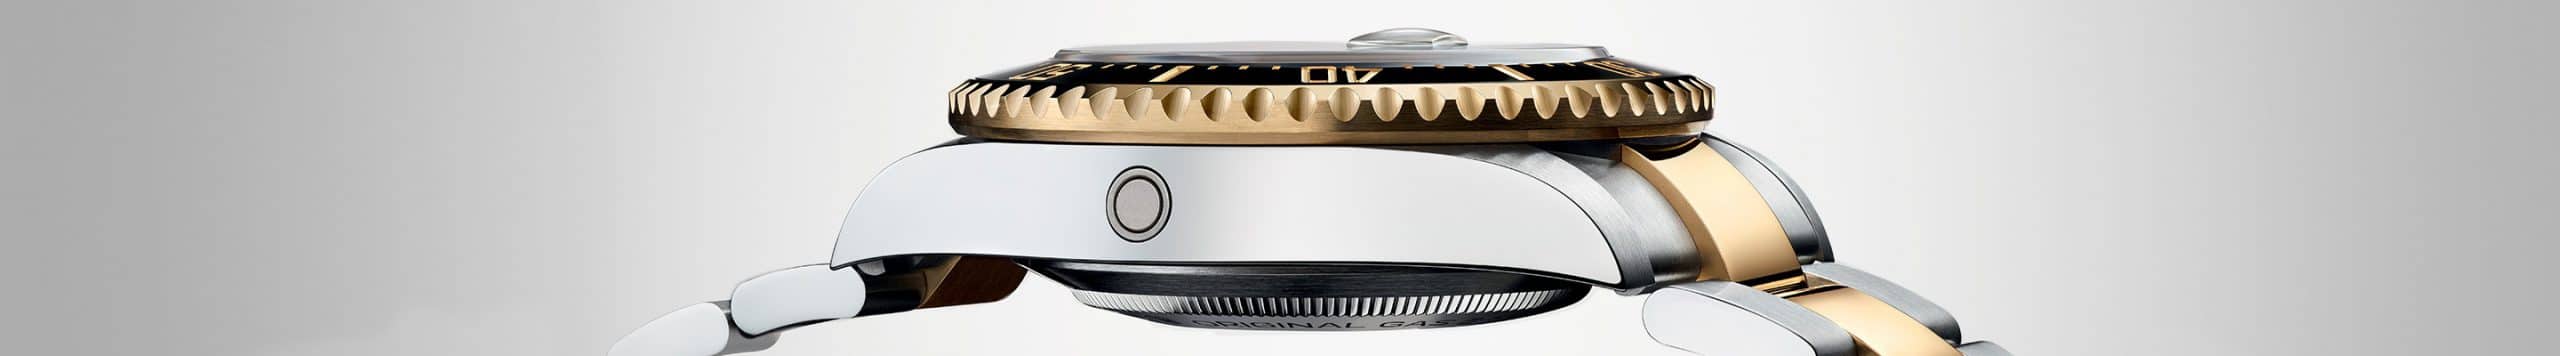 นาฬิกา Rolex Sea Dweller ที่ เพนดูลัม เชียงใหม่